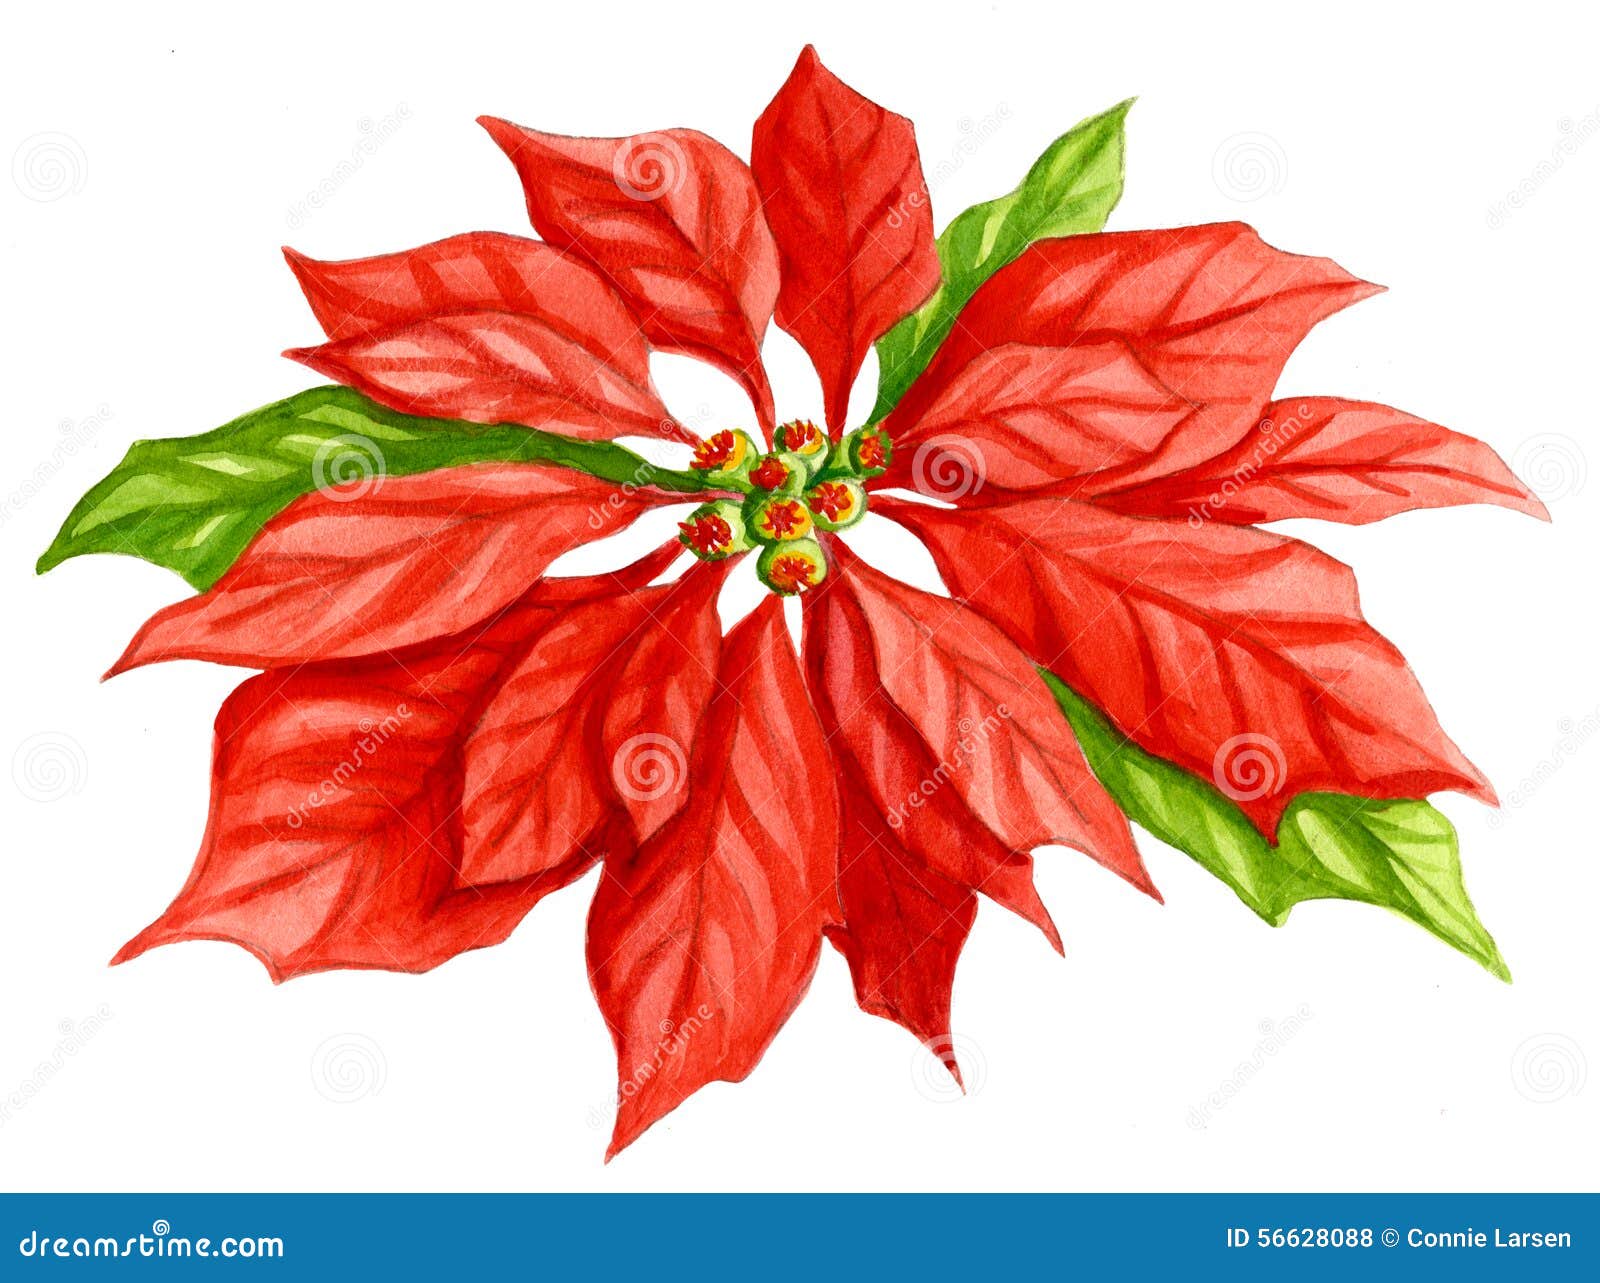 Disegno Stella Di Natale Fiore.Acquerello Del Fiore Della Stella Di Natale Illustrazione Di Stock Illustrazione Di Decorazioni Rosso 56628088